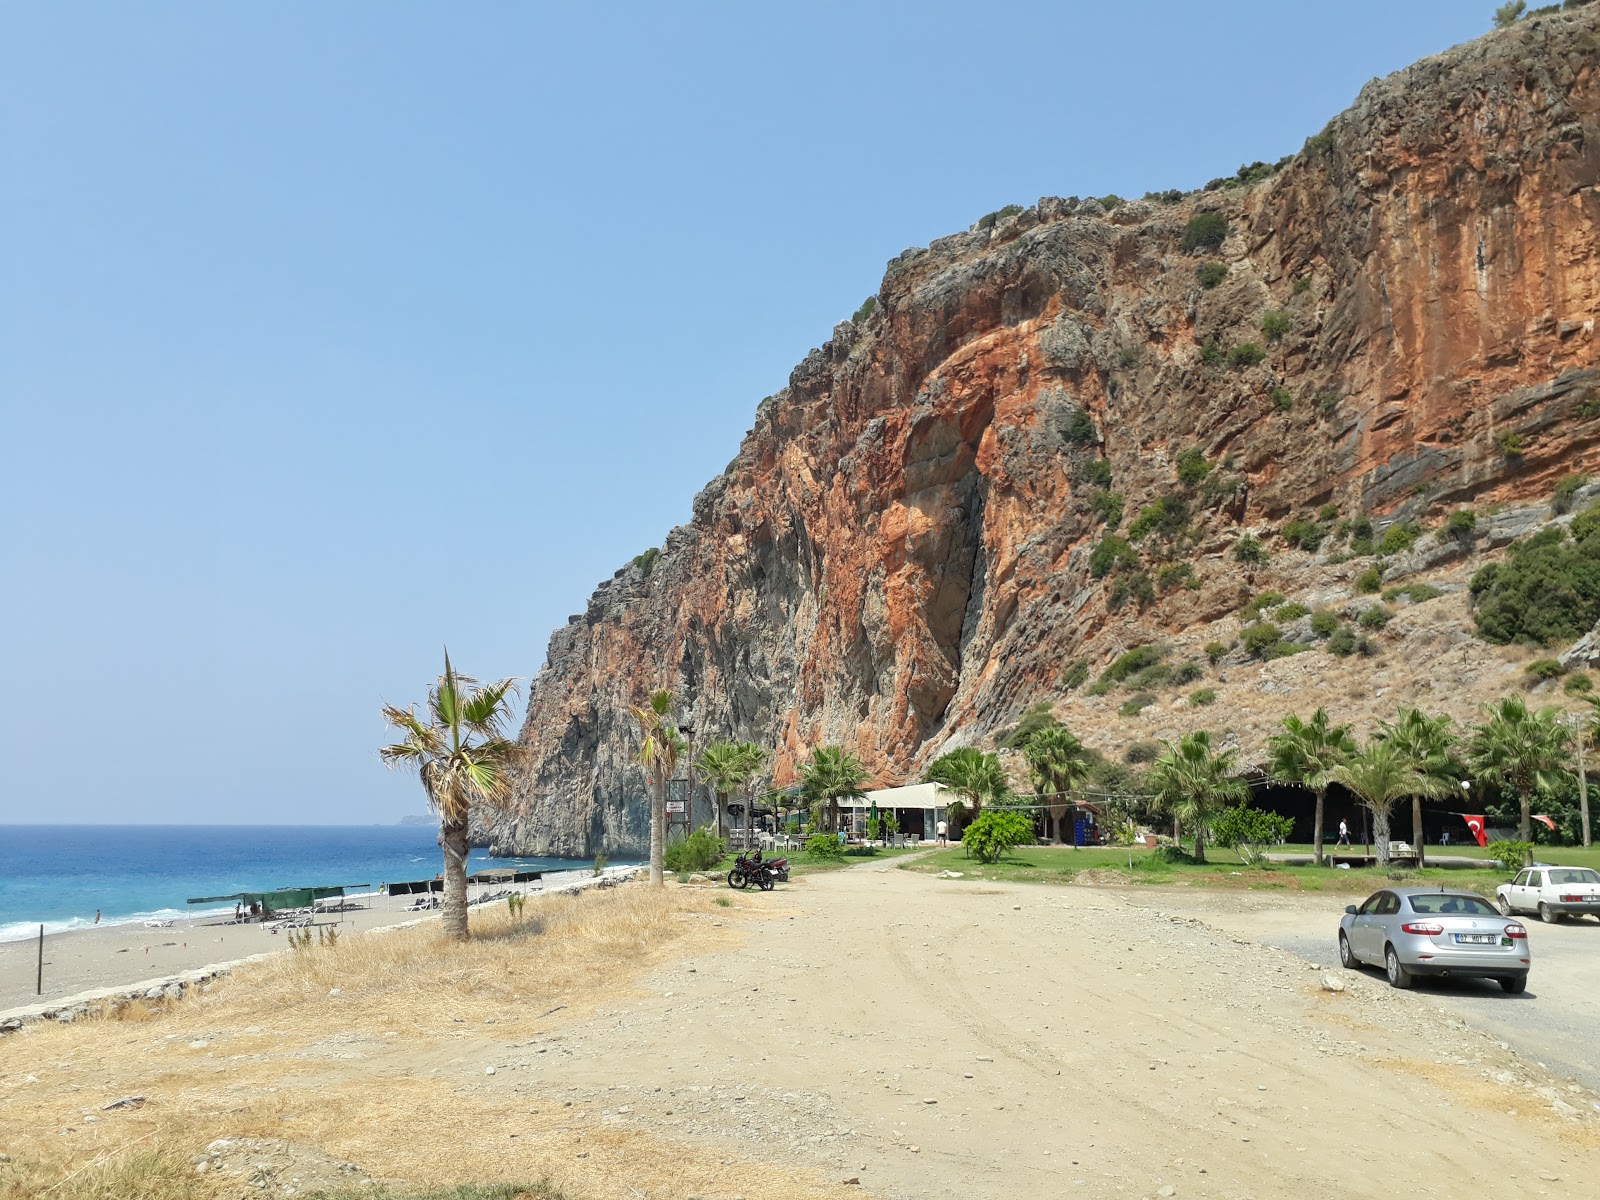 Gazipasa Halk plaji的照片 - 受到放松专家欢迎的热门地点